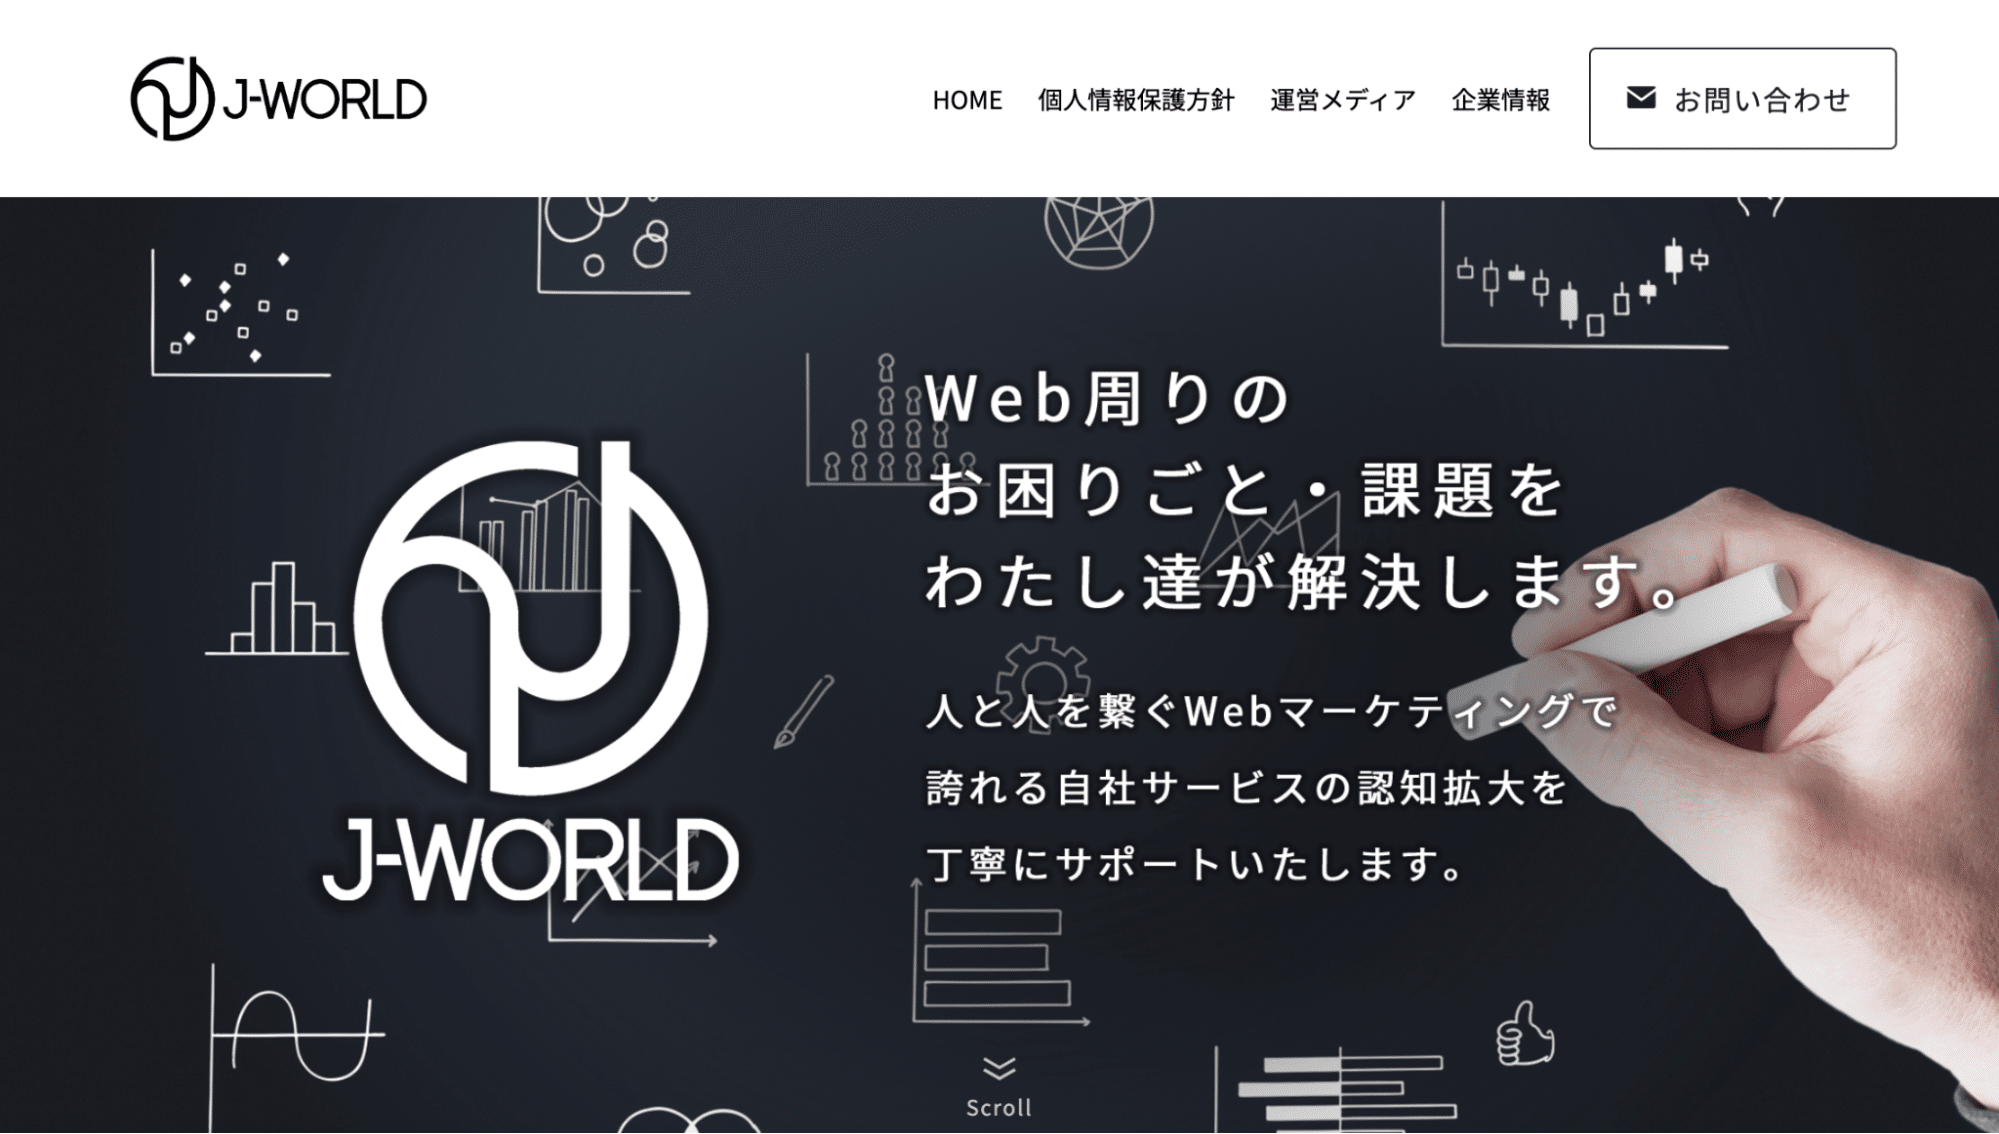 株式会社J-WORLD